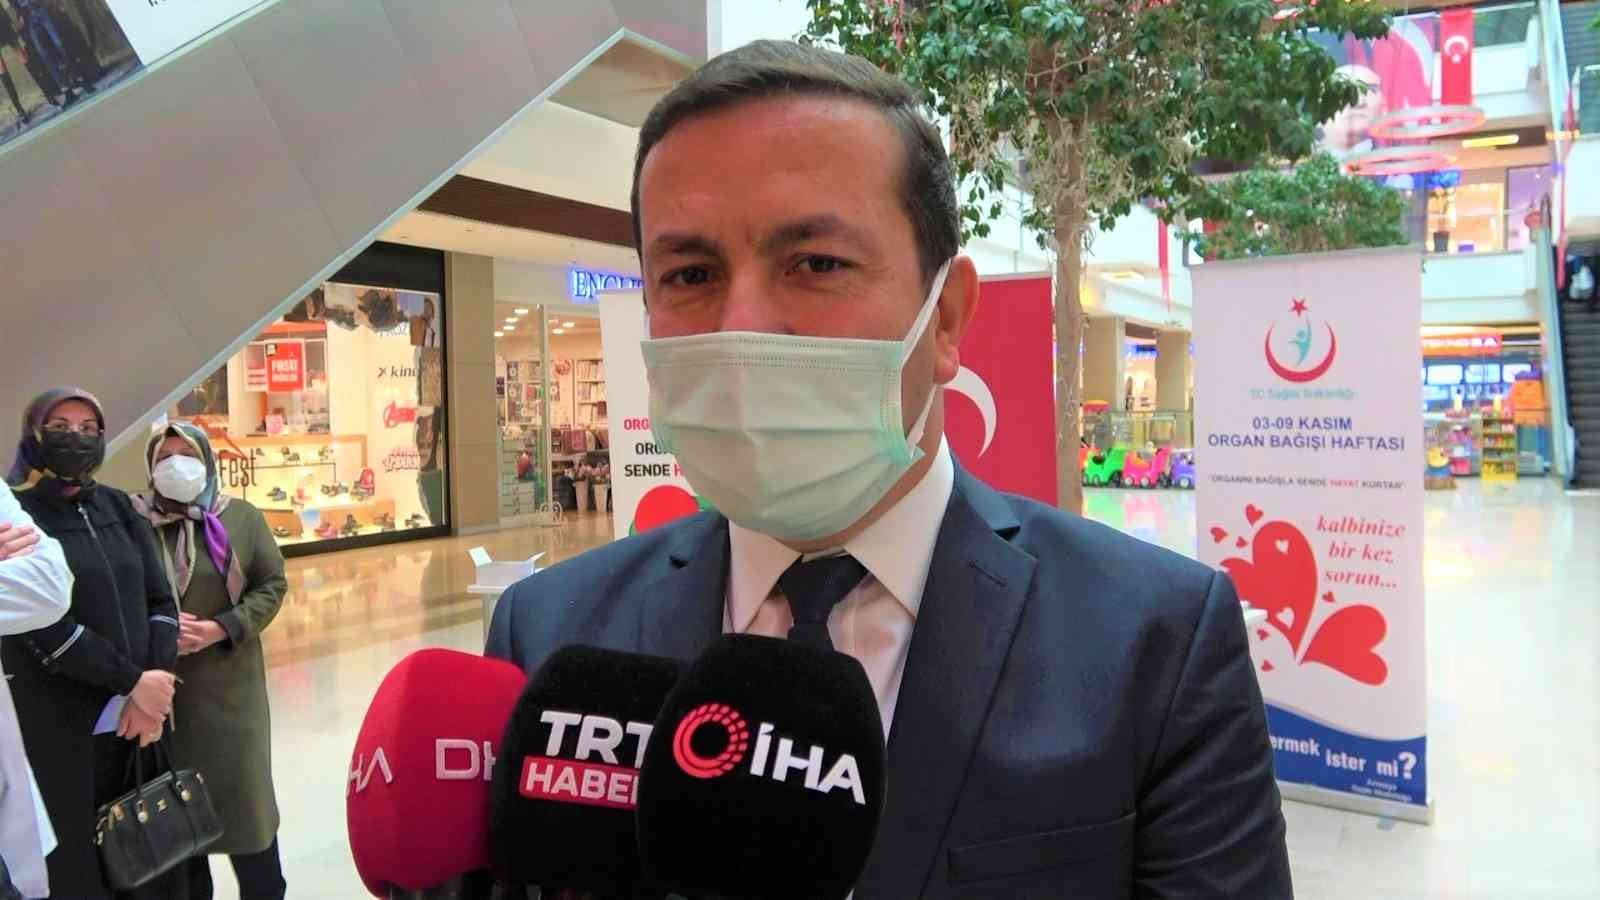 Amasya İl Sağlık Müdürü Nergiz: “Beyin ölümü gerçekleşmiş bir kişi en az 6 kişinin hayatını kurtarabilir” #amasya